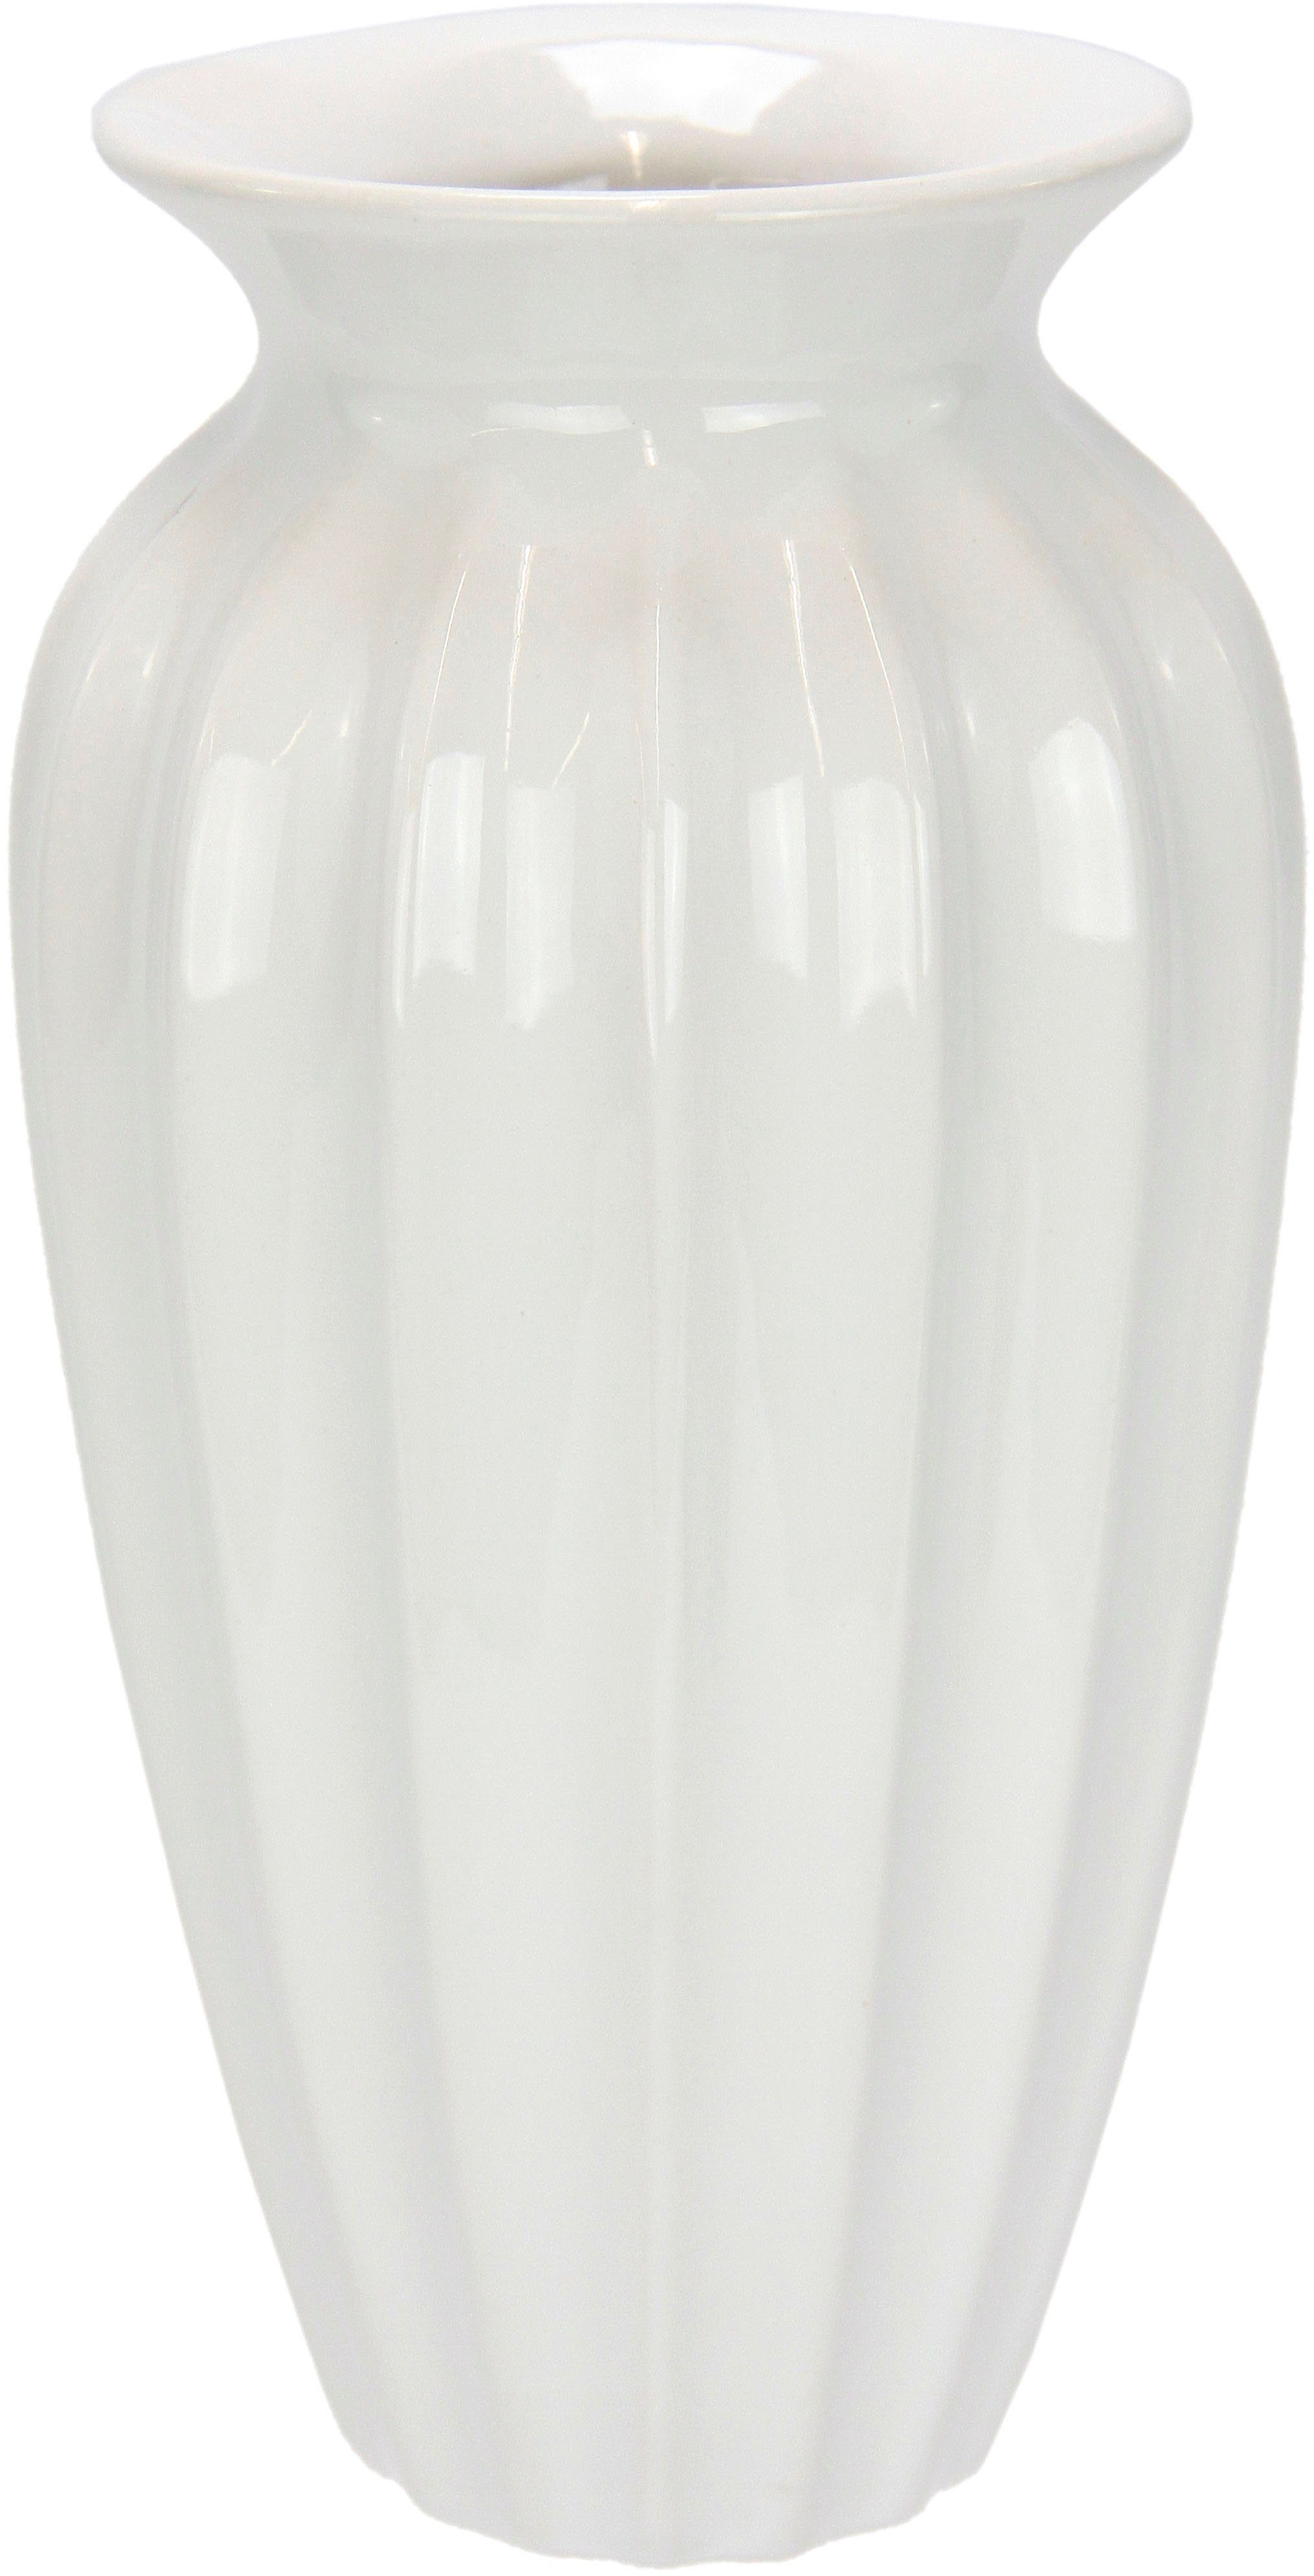 I.GE.A. Dekovase Keramik Vase, Aus Keramik, groß rund | Dekovasen